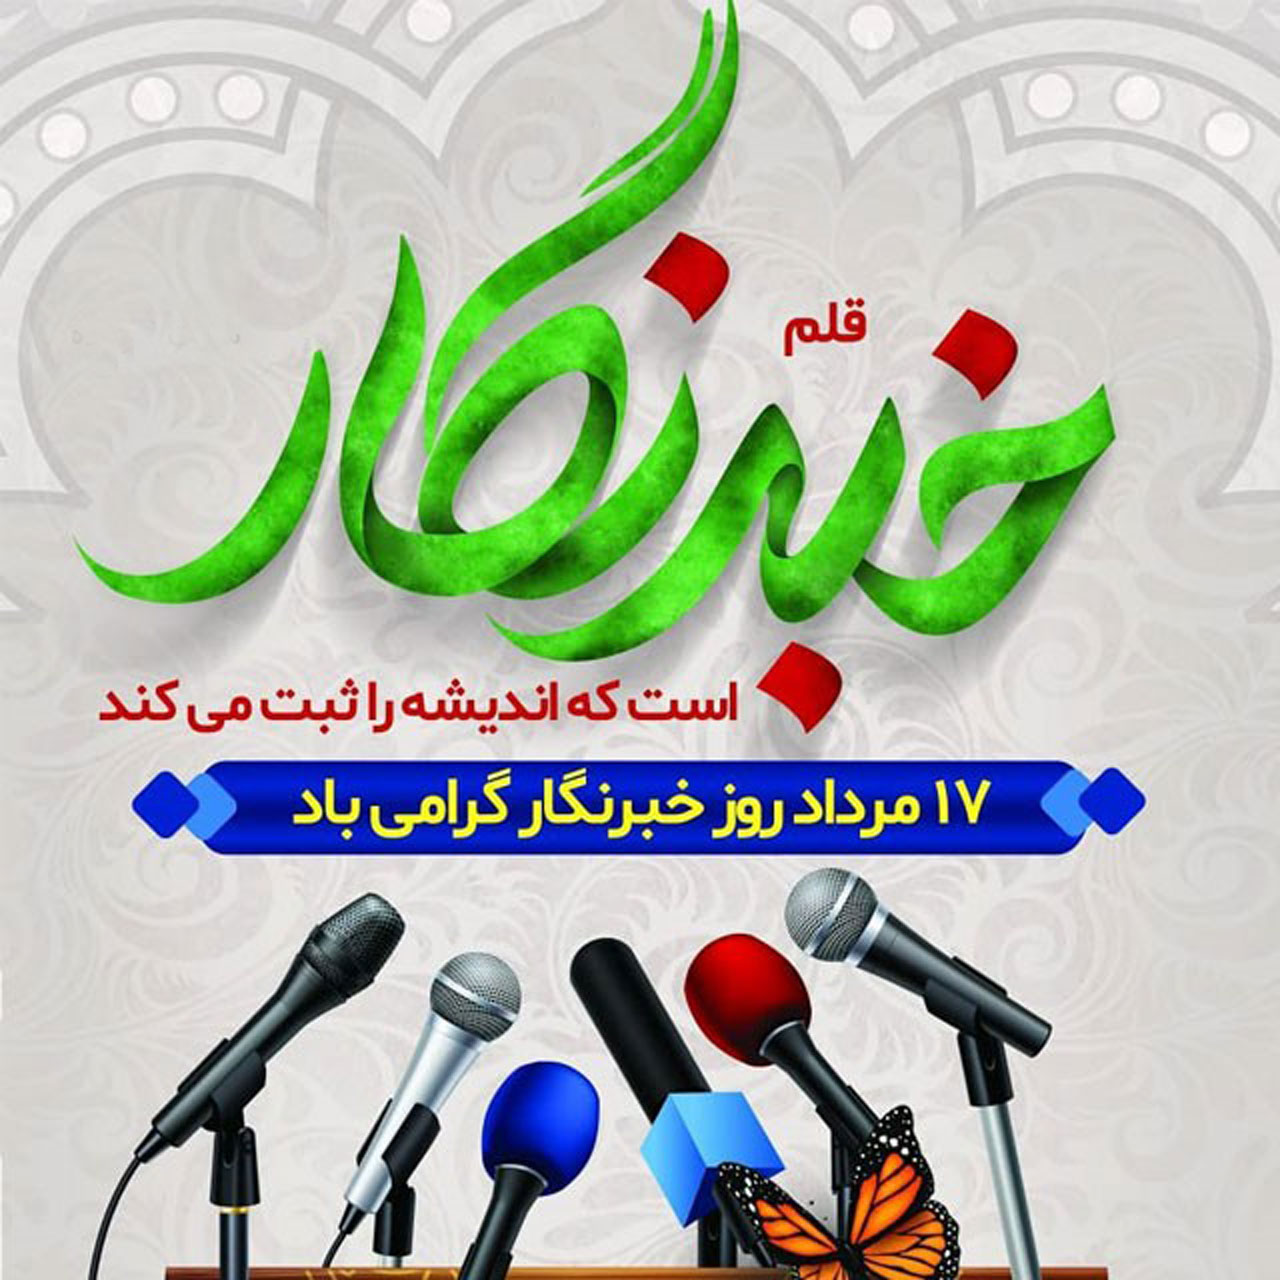 خبرنگار مبارک باد - پیام تبریک رئیس شورا به مناسبت روز خبرنگار